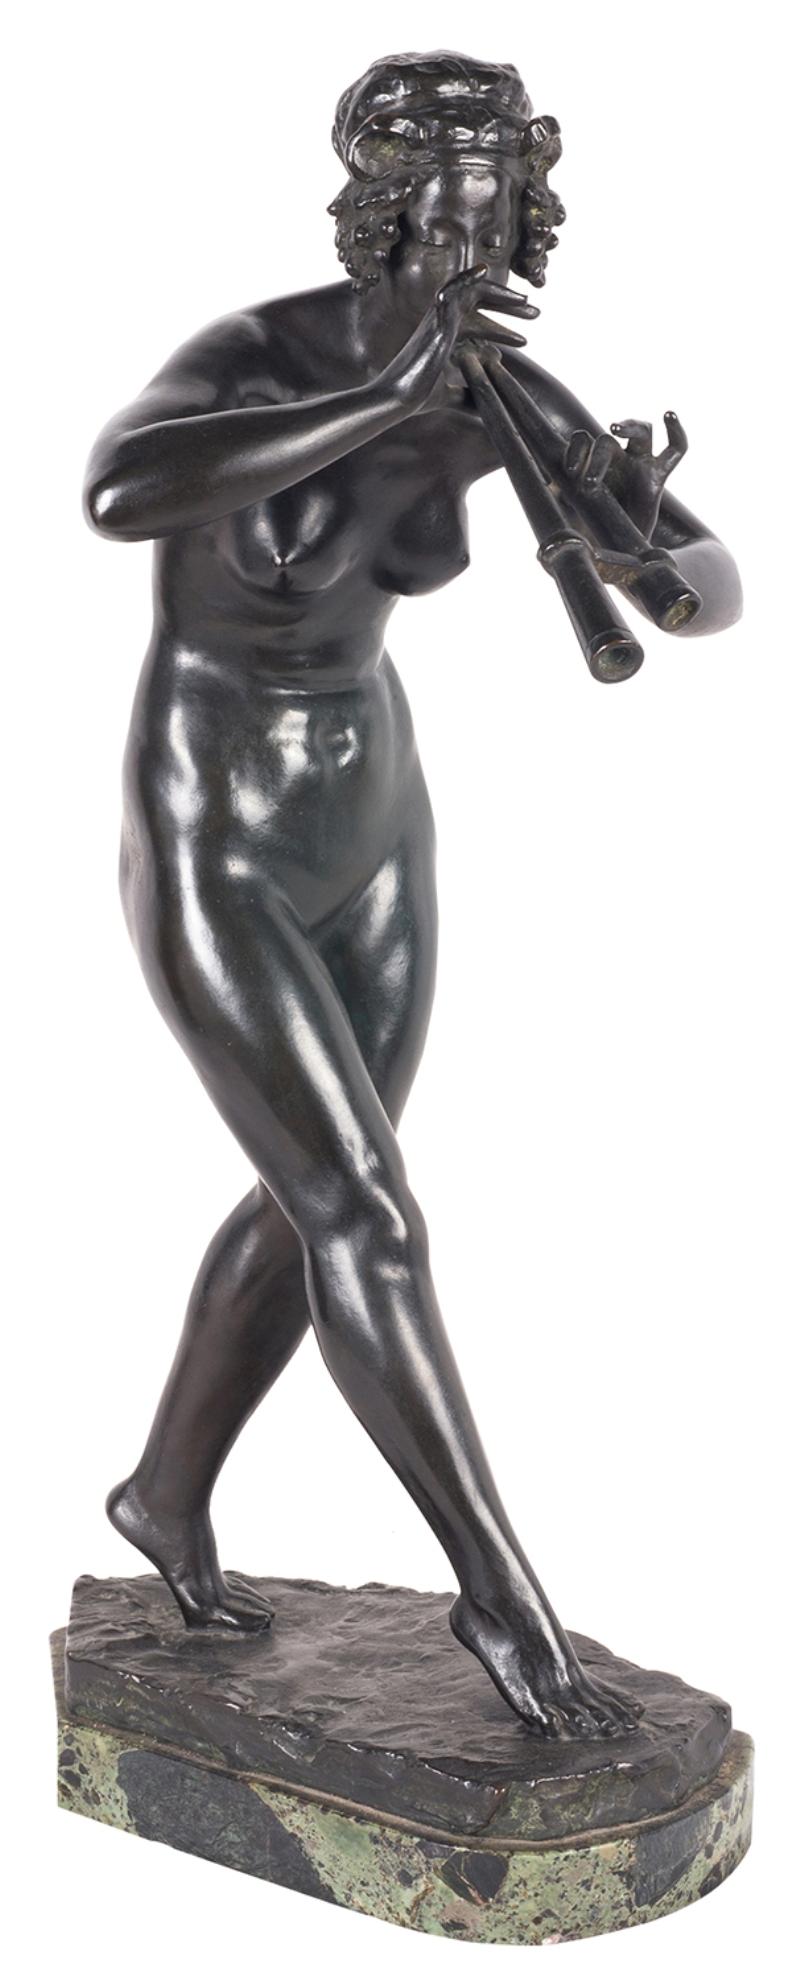 Statue en bronze du XIXe siècle de très bonne qualité représentant une femme nue jouant de la cornemuse, montée sur un socle en marbre.